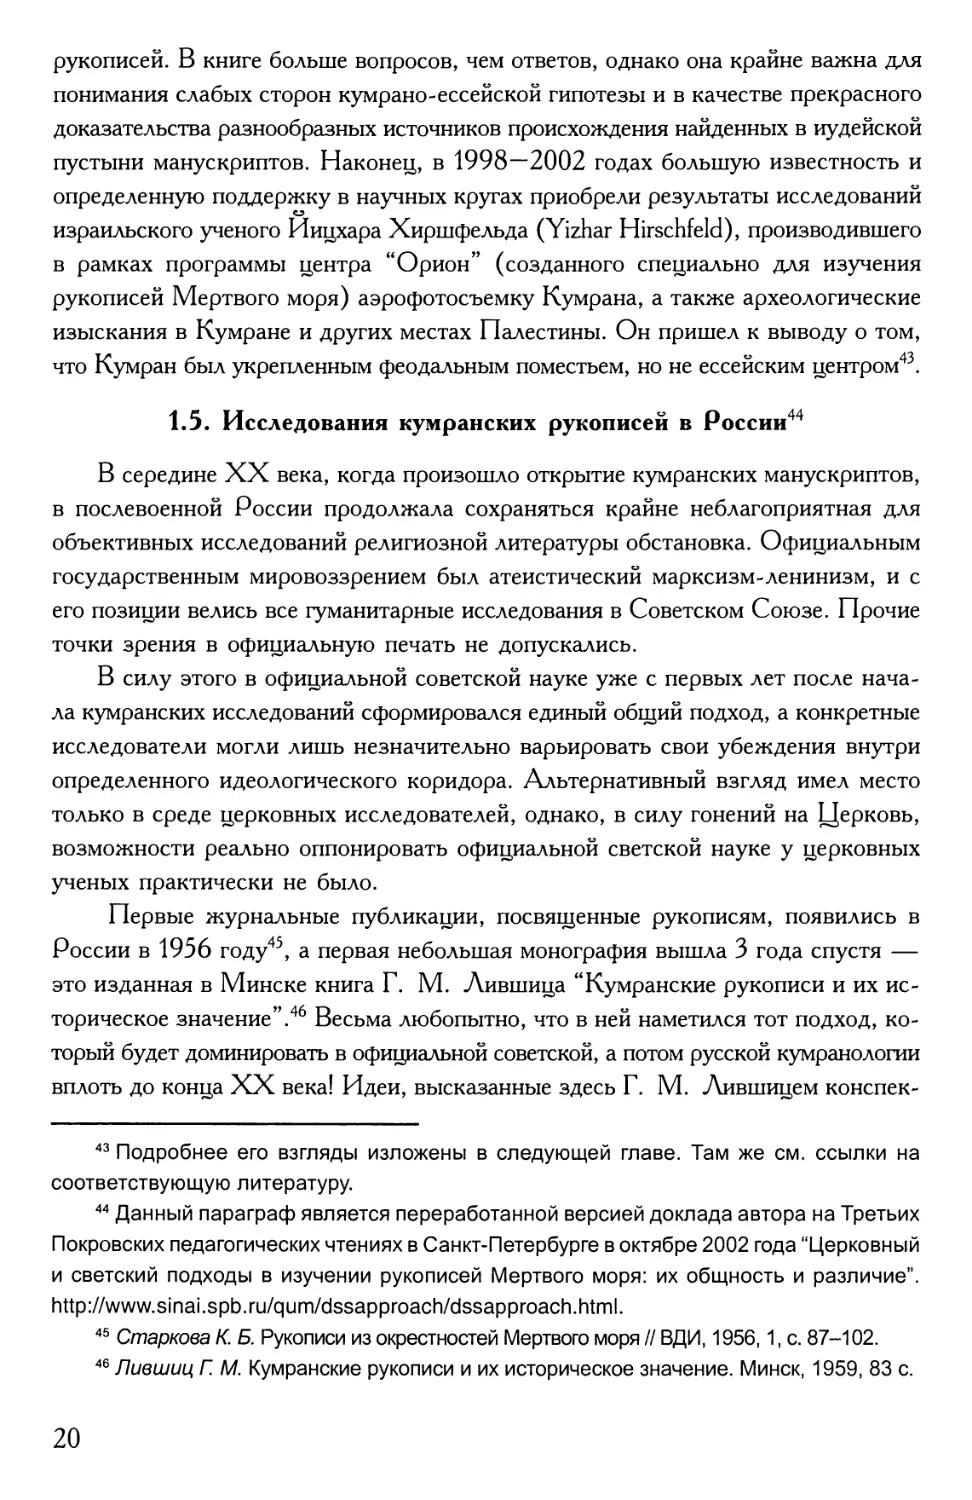 1.5. Исследования кумранских рукописей в России